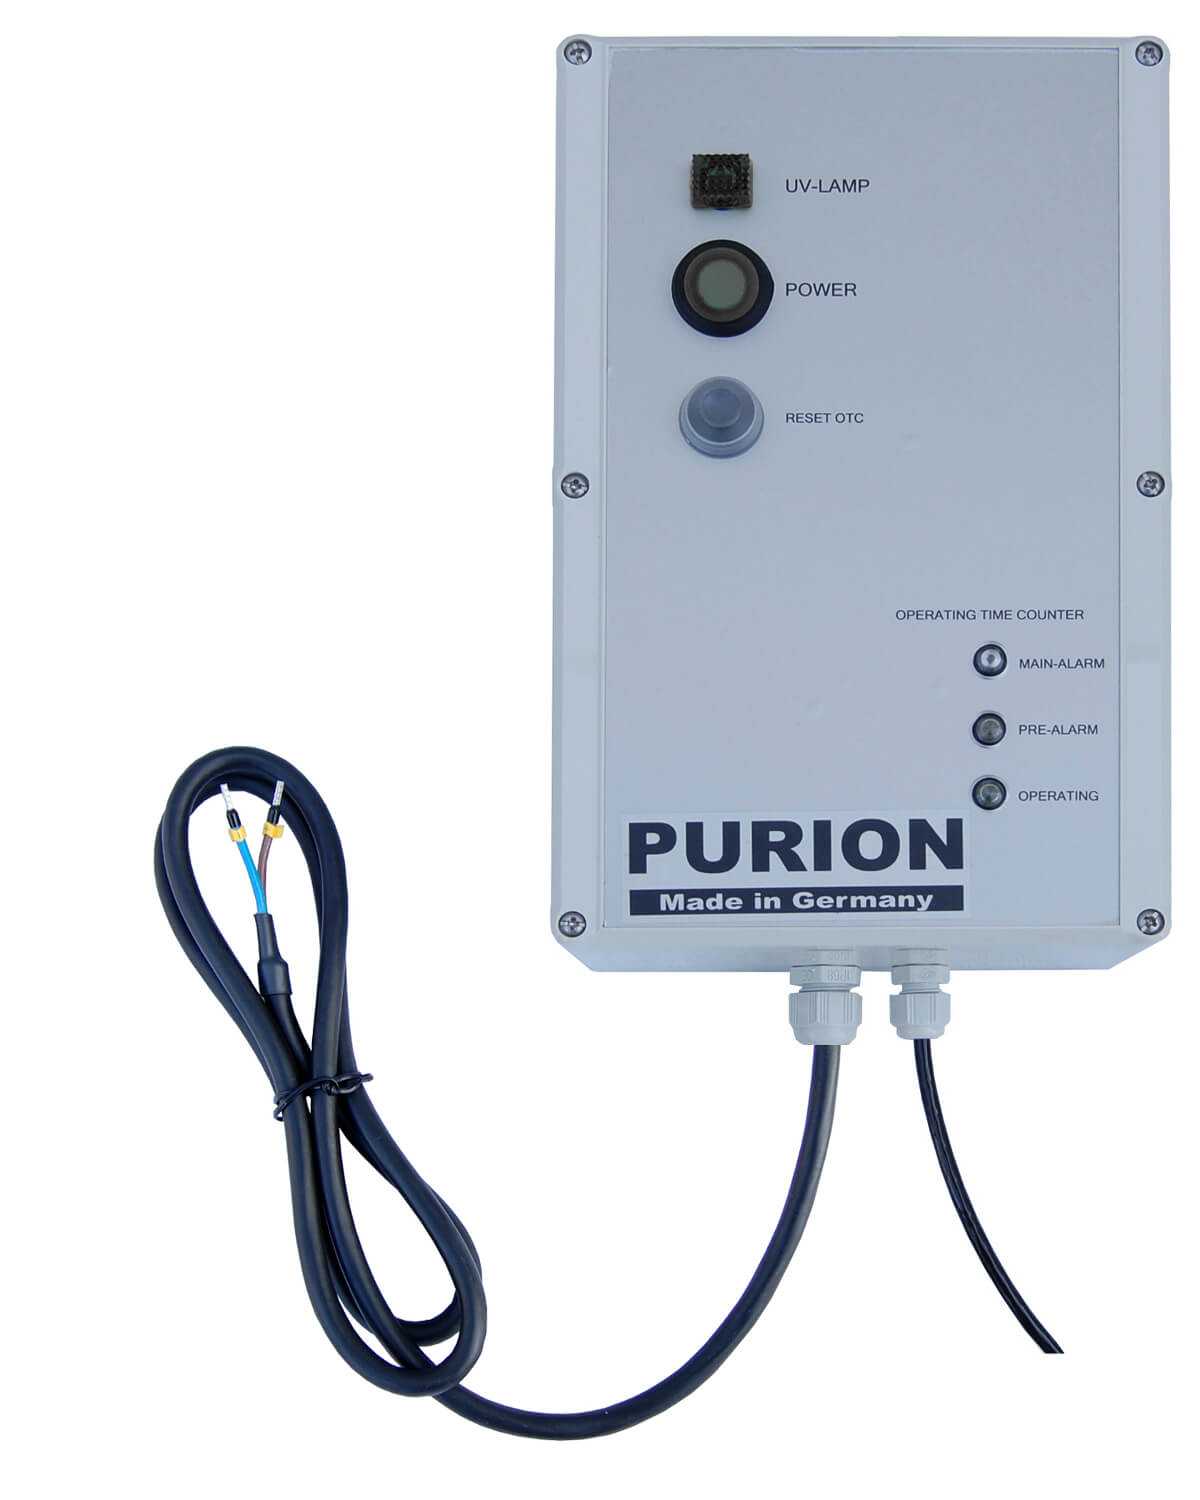 Das Kompaktsystem active der PURION GmbH ist eine innovative kompakte UV-C-Anlage, die mit ihrer fortschrittlichen Wasseraufbereitungskette für eine effiziente Wasserreinigung sorgt.